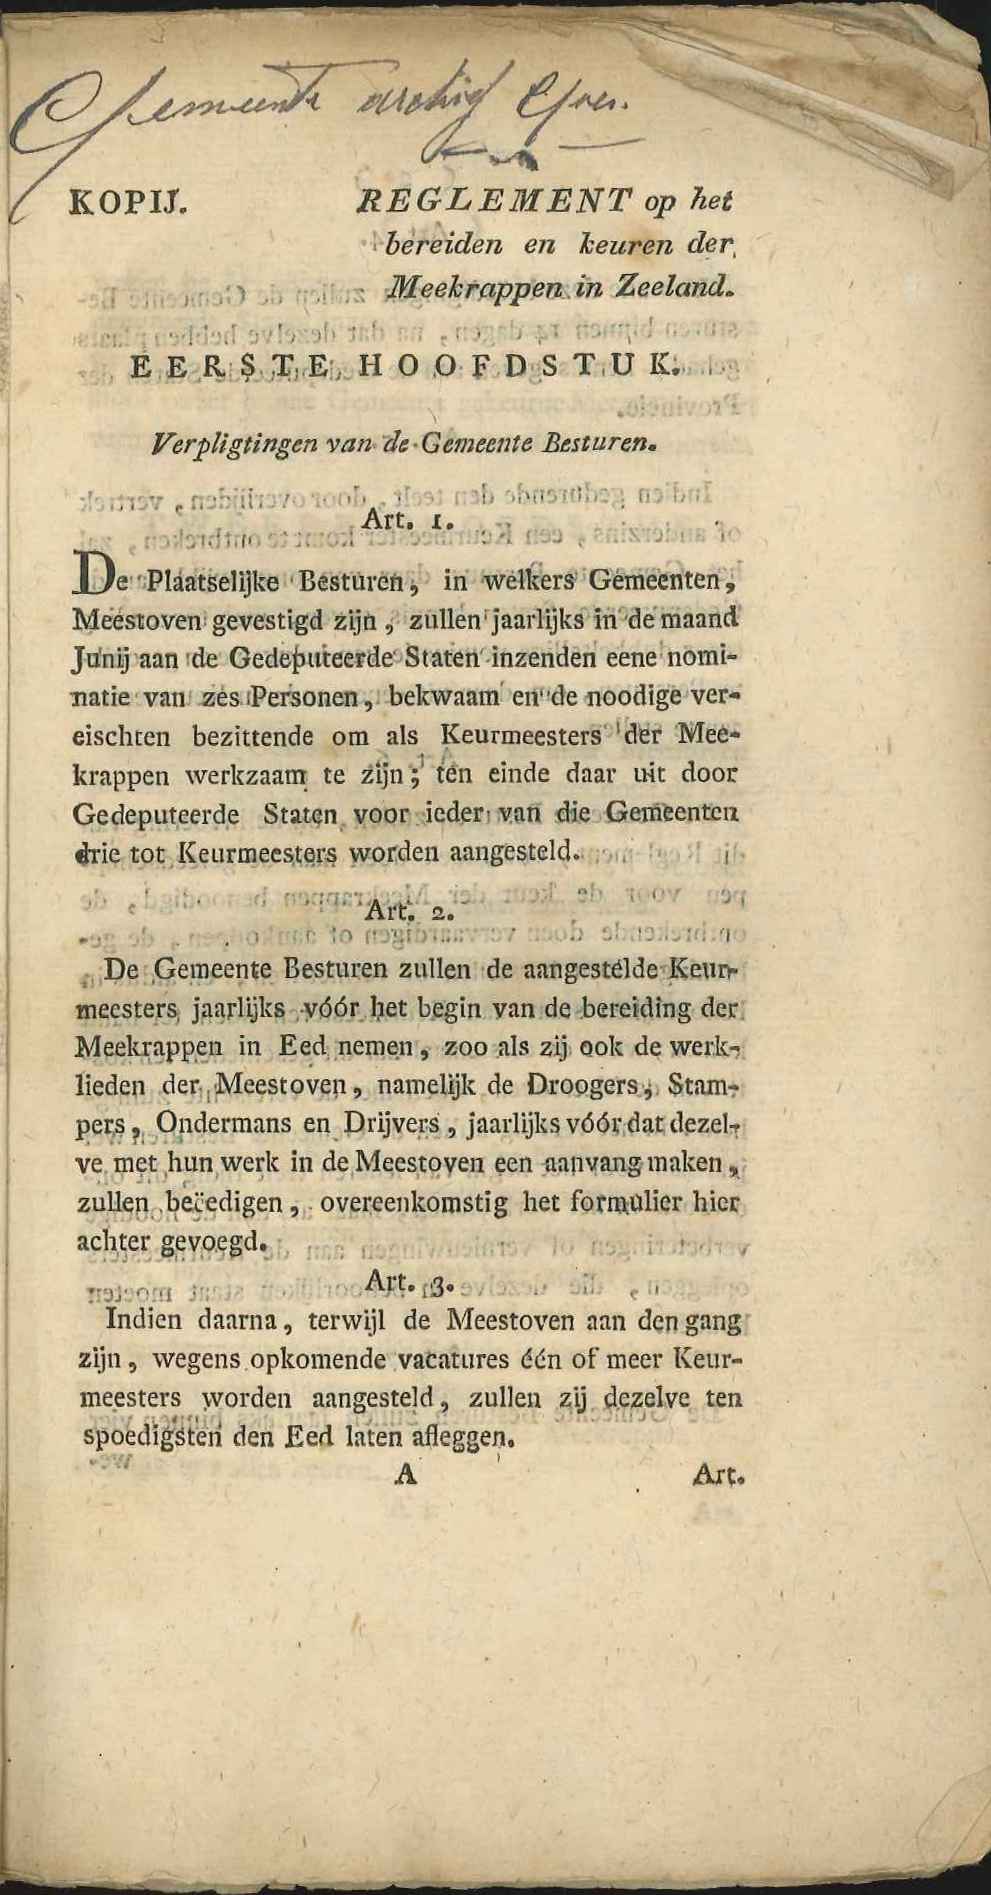 Reglement op de teelt van meekrap in Zeeland, 1821. GAG.ASG.inv.nr. 2558.